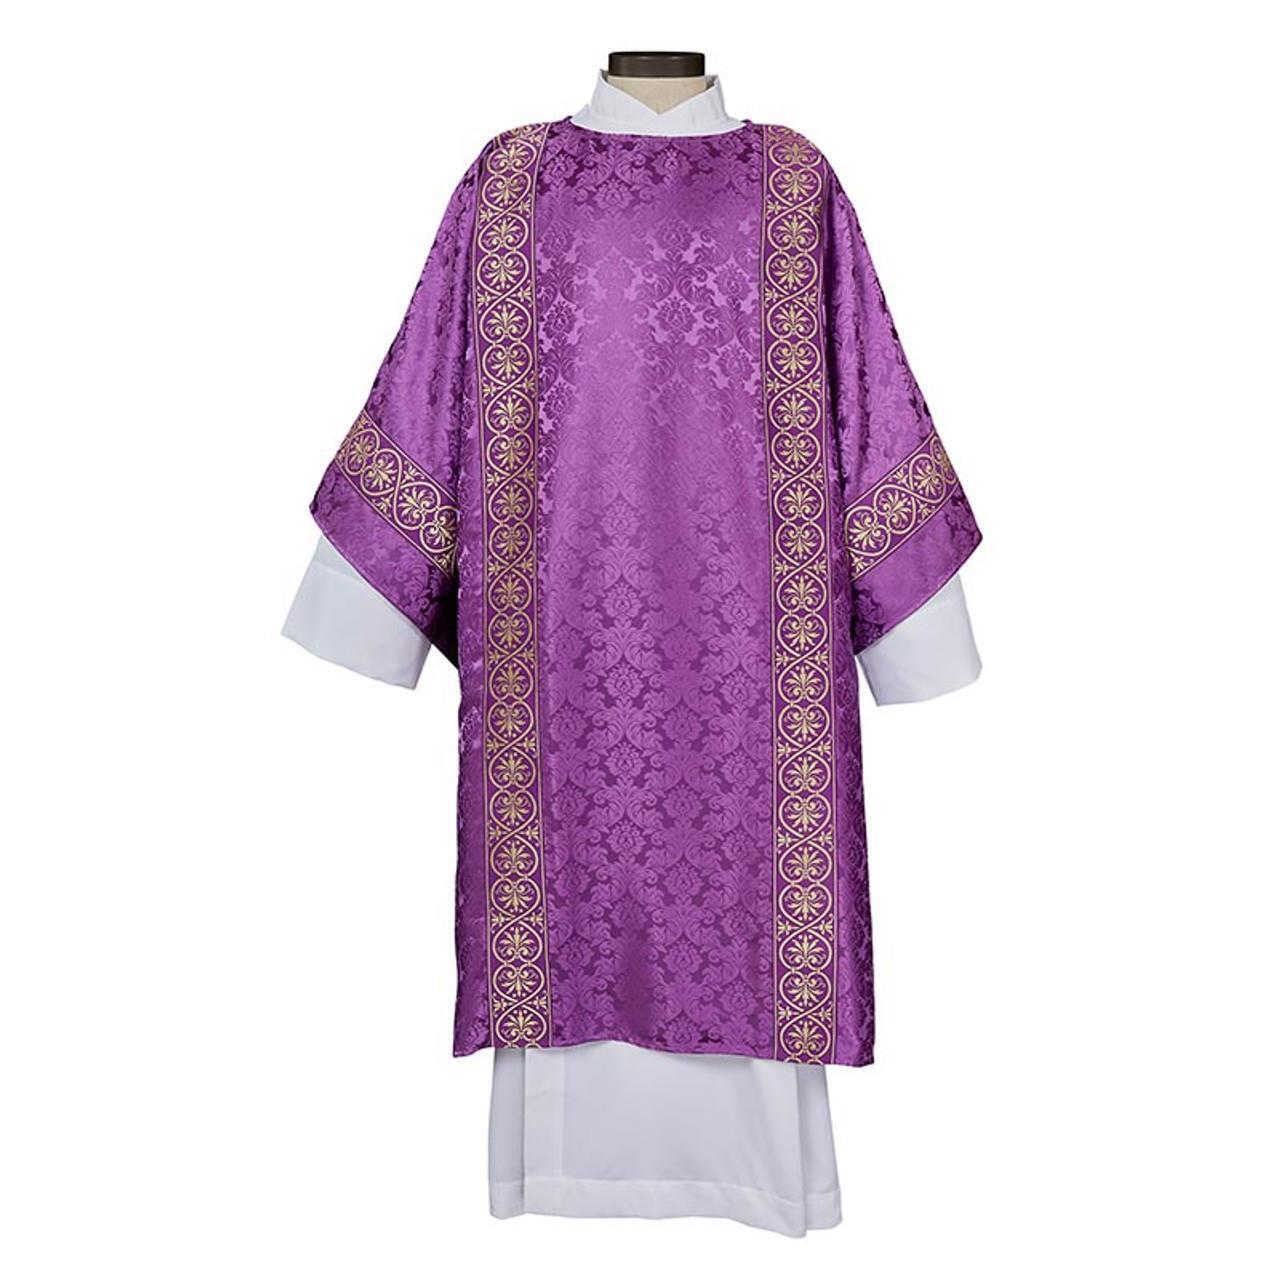 Monreale Dalmatic Woven Satin Bandin Purple for Priests in Size:59 x 48